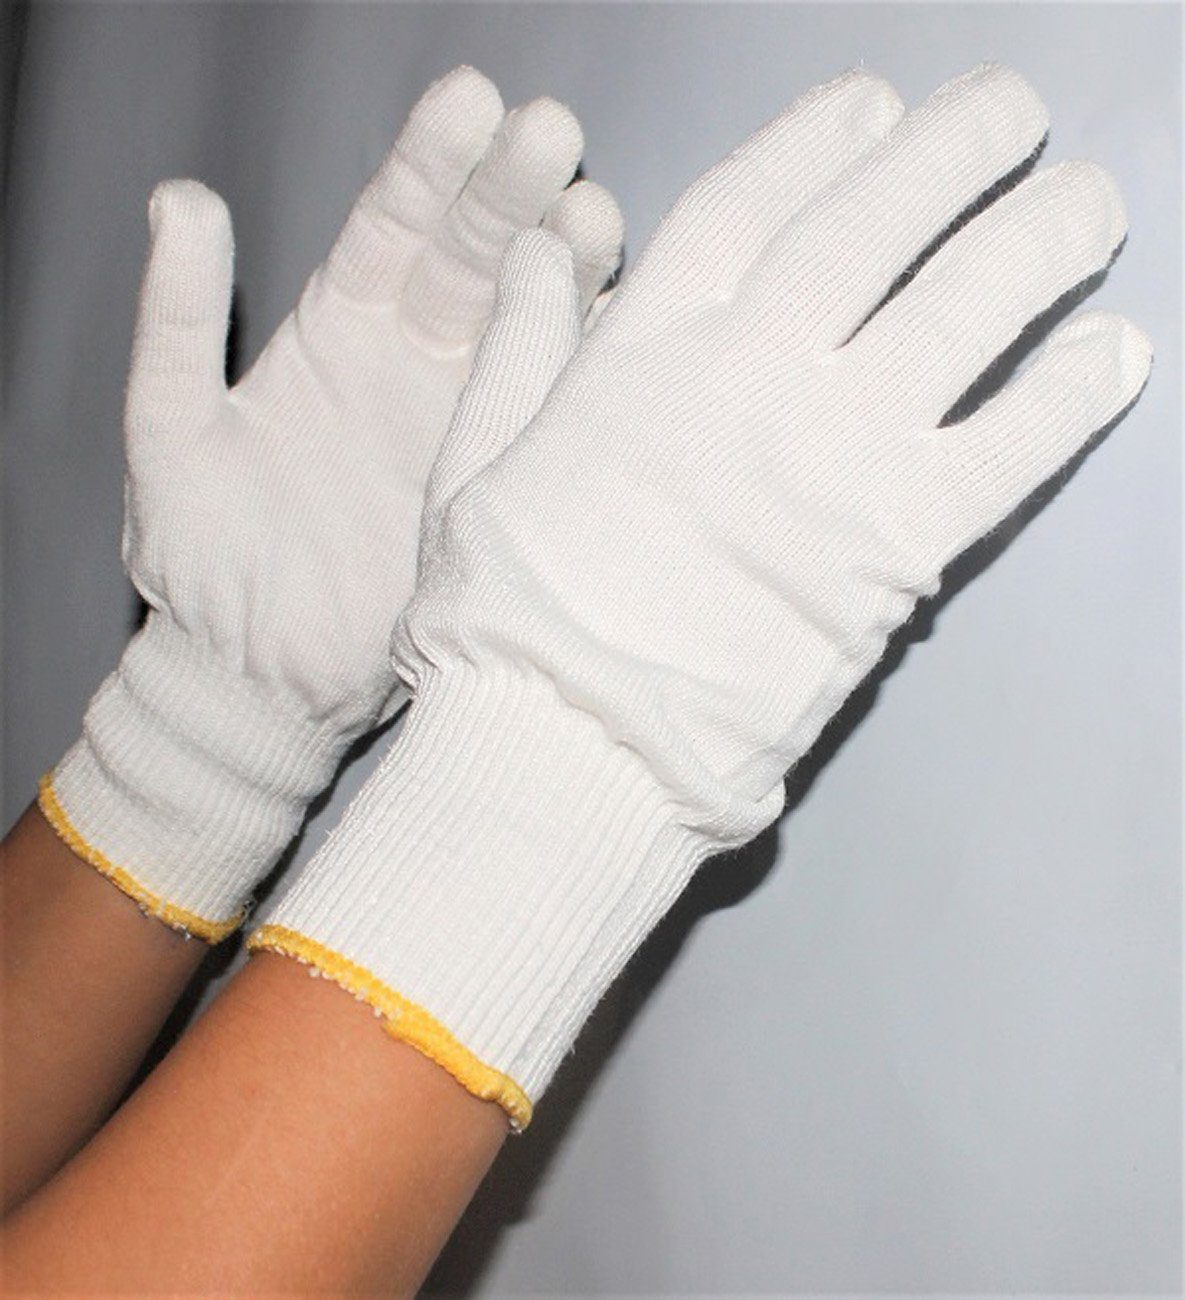 myMAW Schnittschutzhandschuhe 1 Paar KCL Nevocut 923 Schnittschutzhandschuhe weiß Handschuhe H…